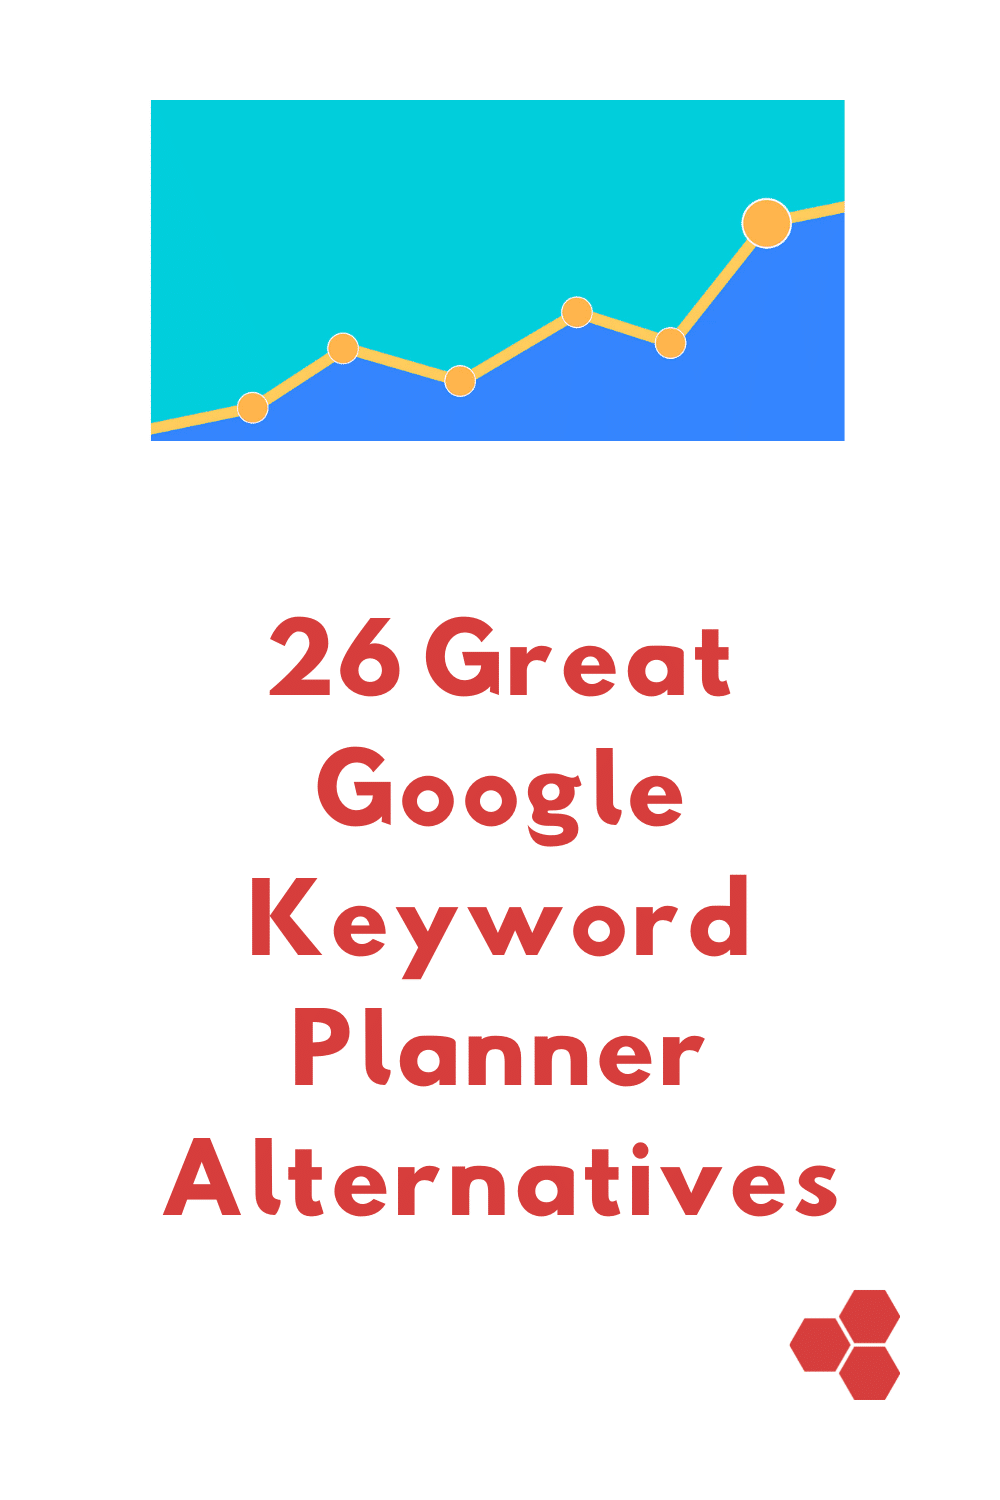 26 Great Google Keyword Planner Alternatives